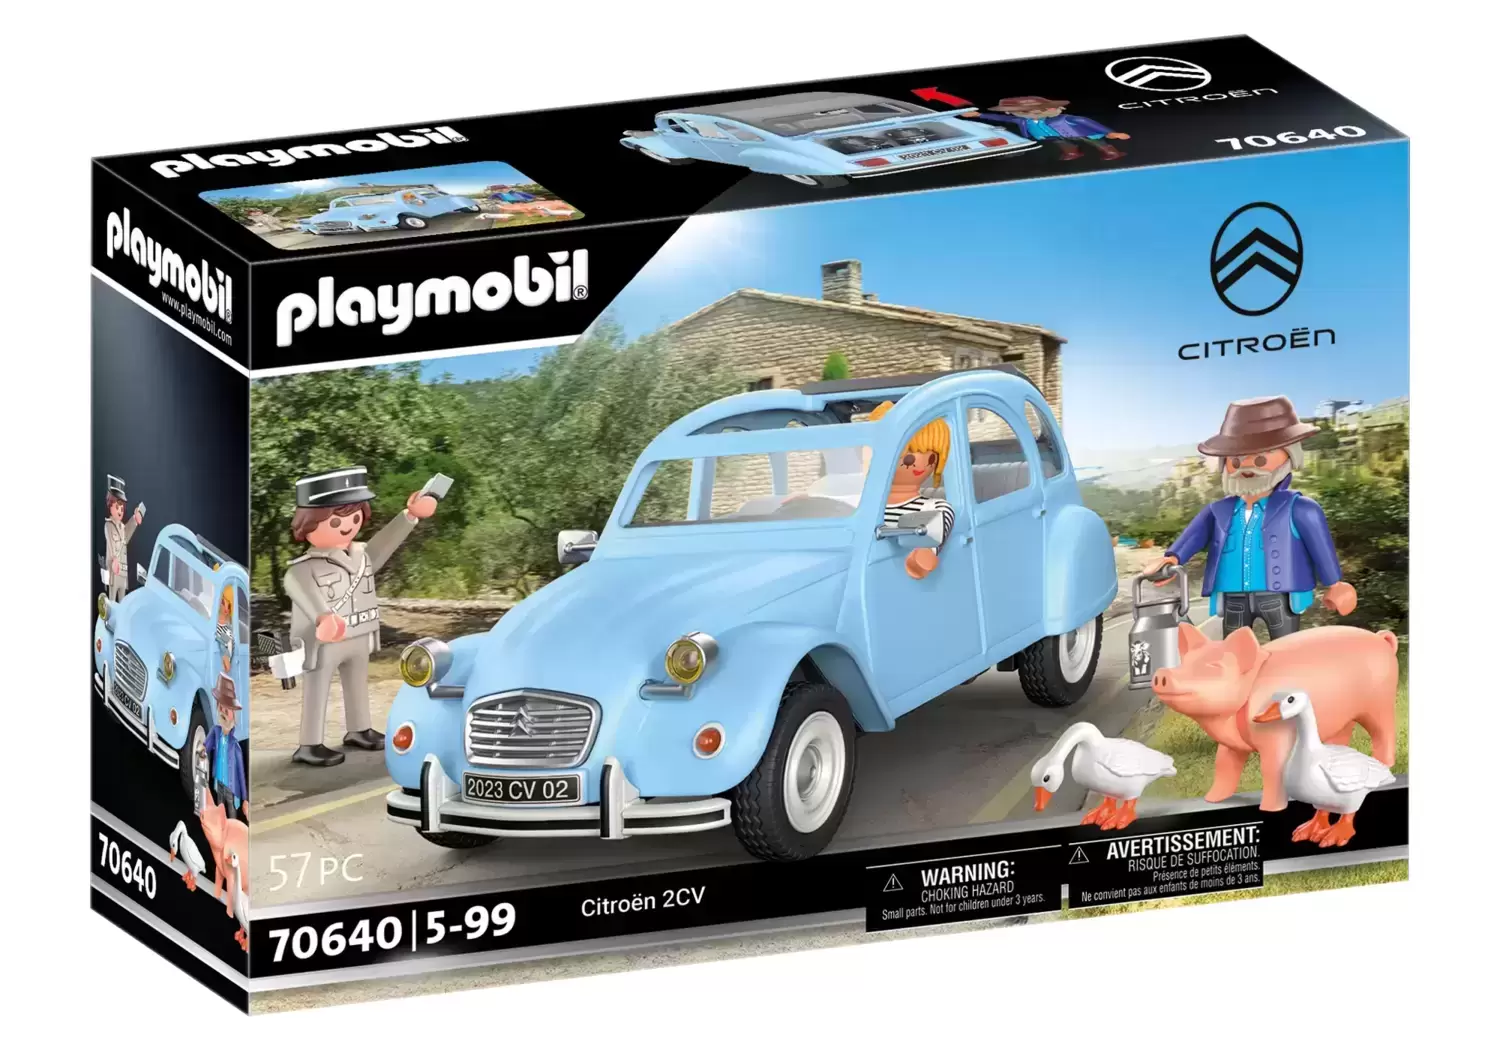 Playmobil Classic Cars - Citroën 2CV